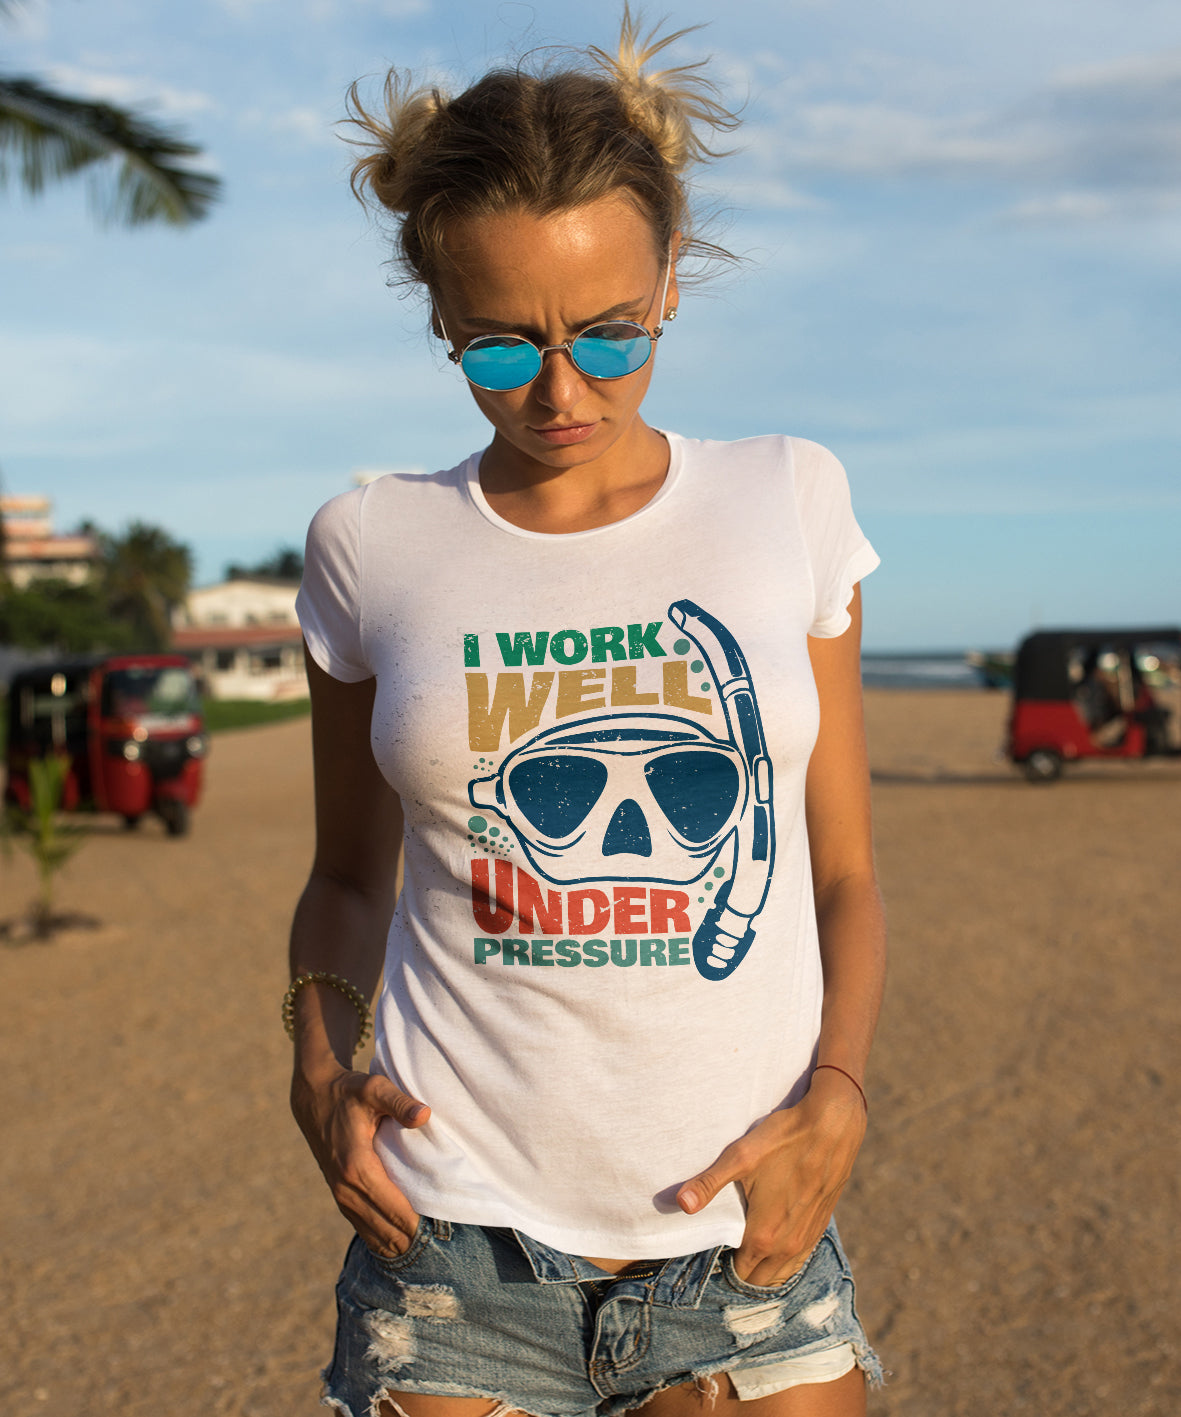 "UNDER PRESSURE" T-shirt